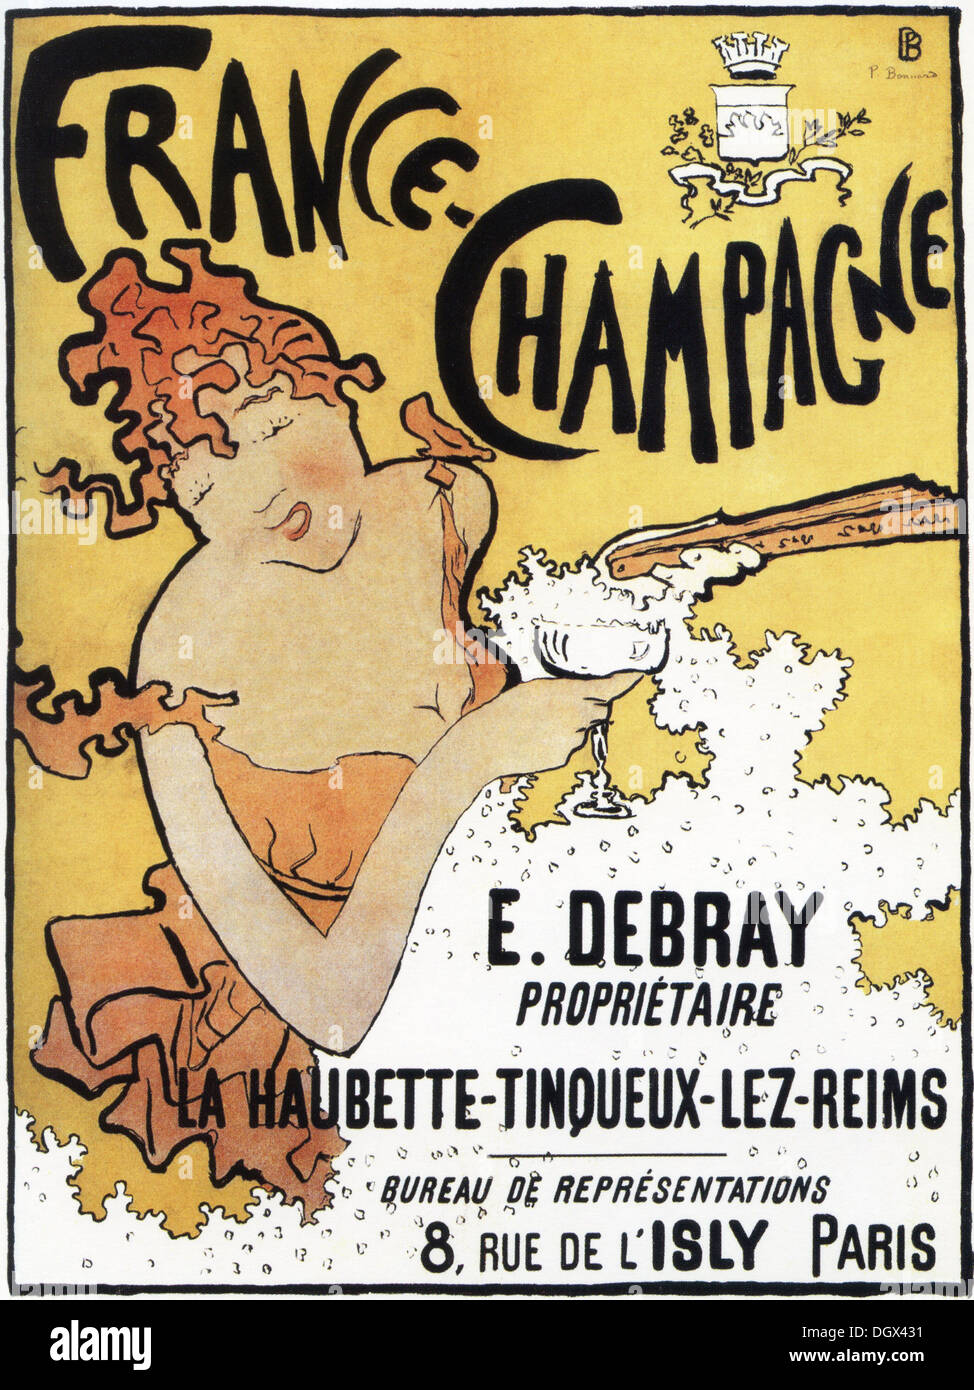 Pierre Bonnard France-Champagne - une affiche, 1891 - éditorial uniquement. Banque D'Images